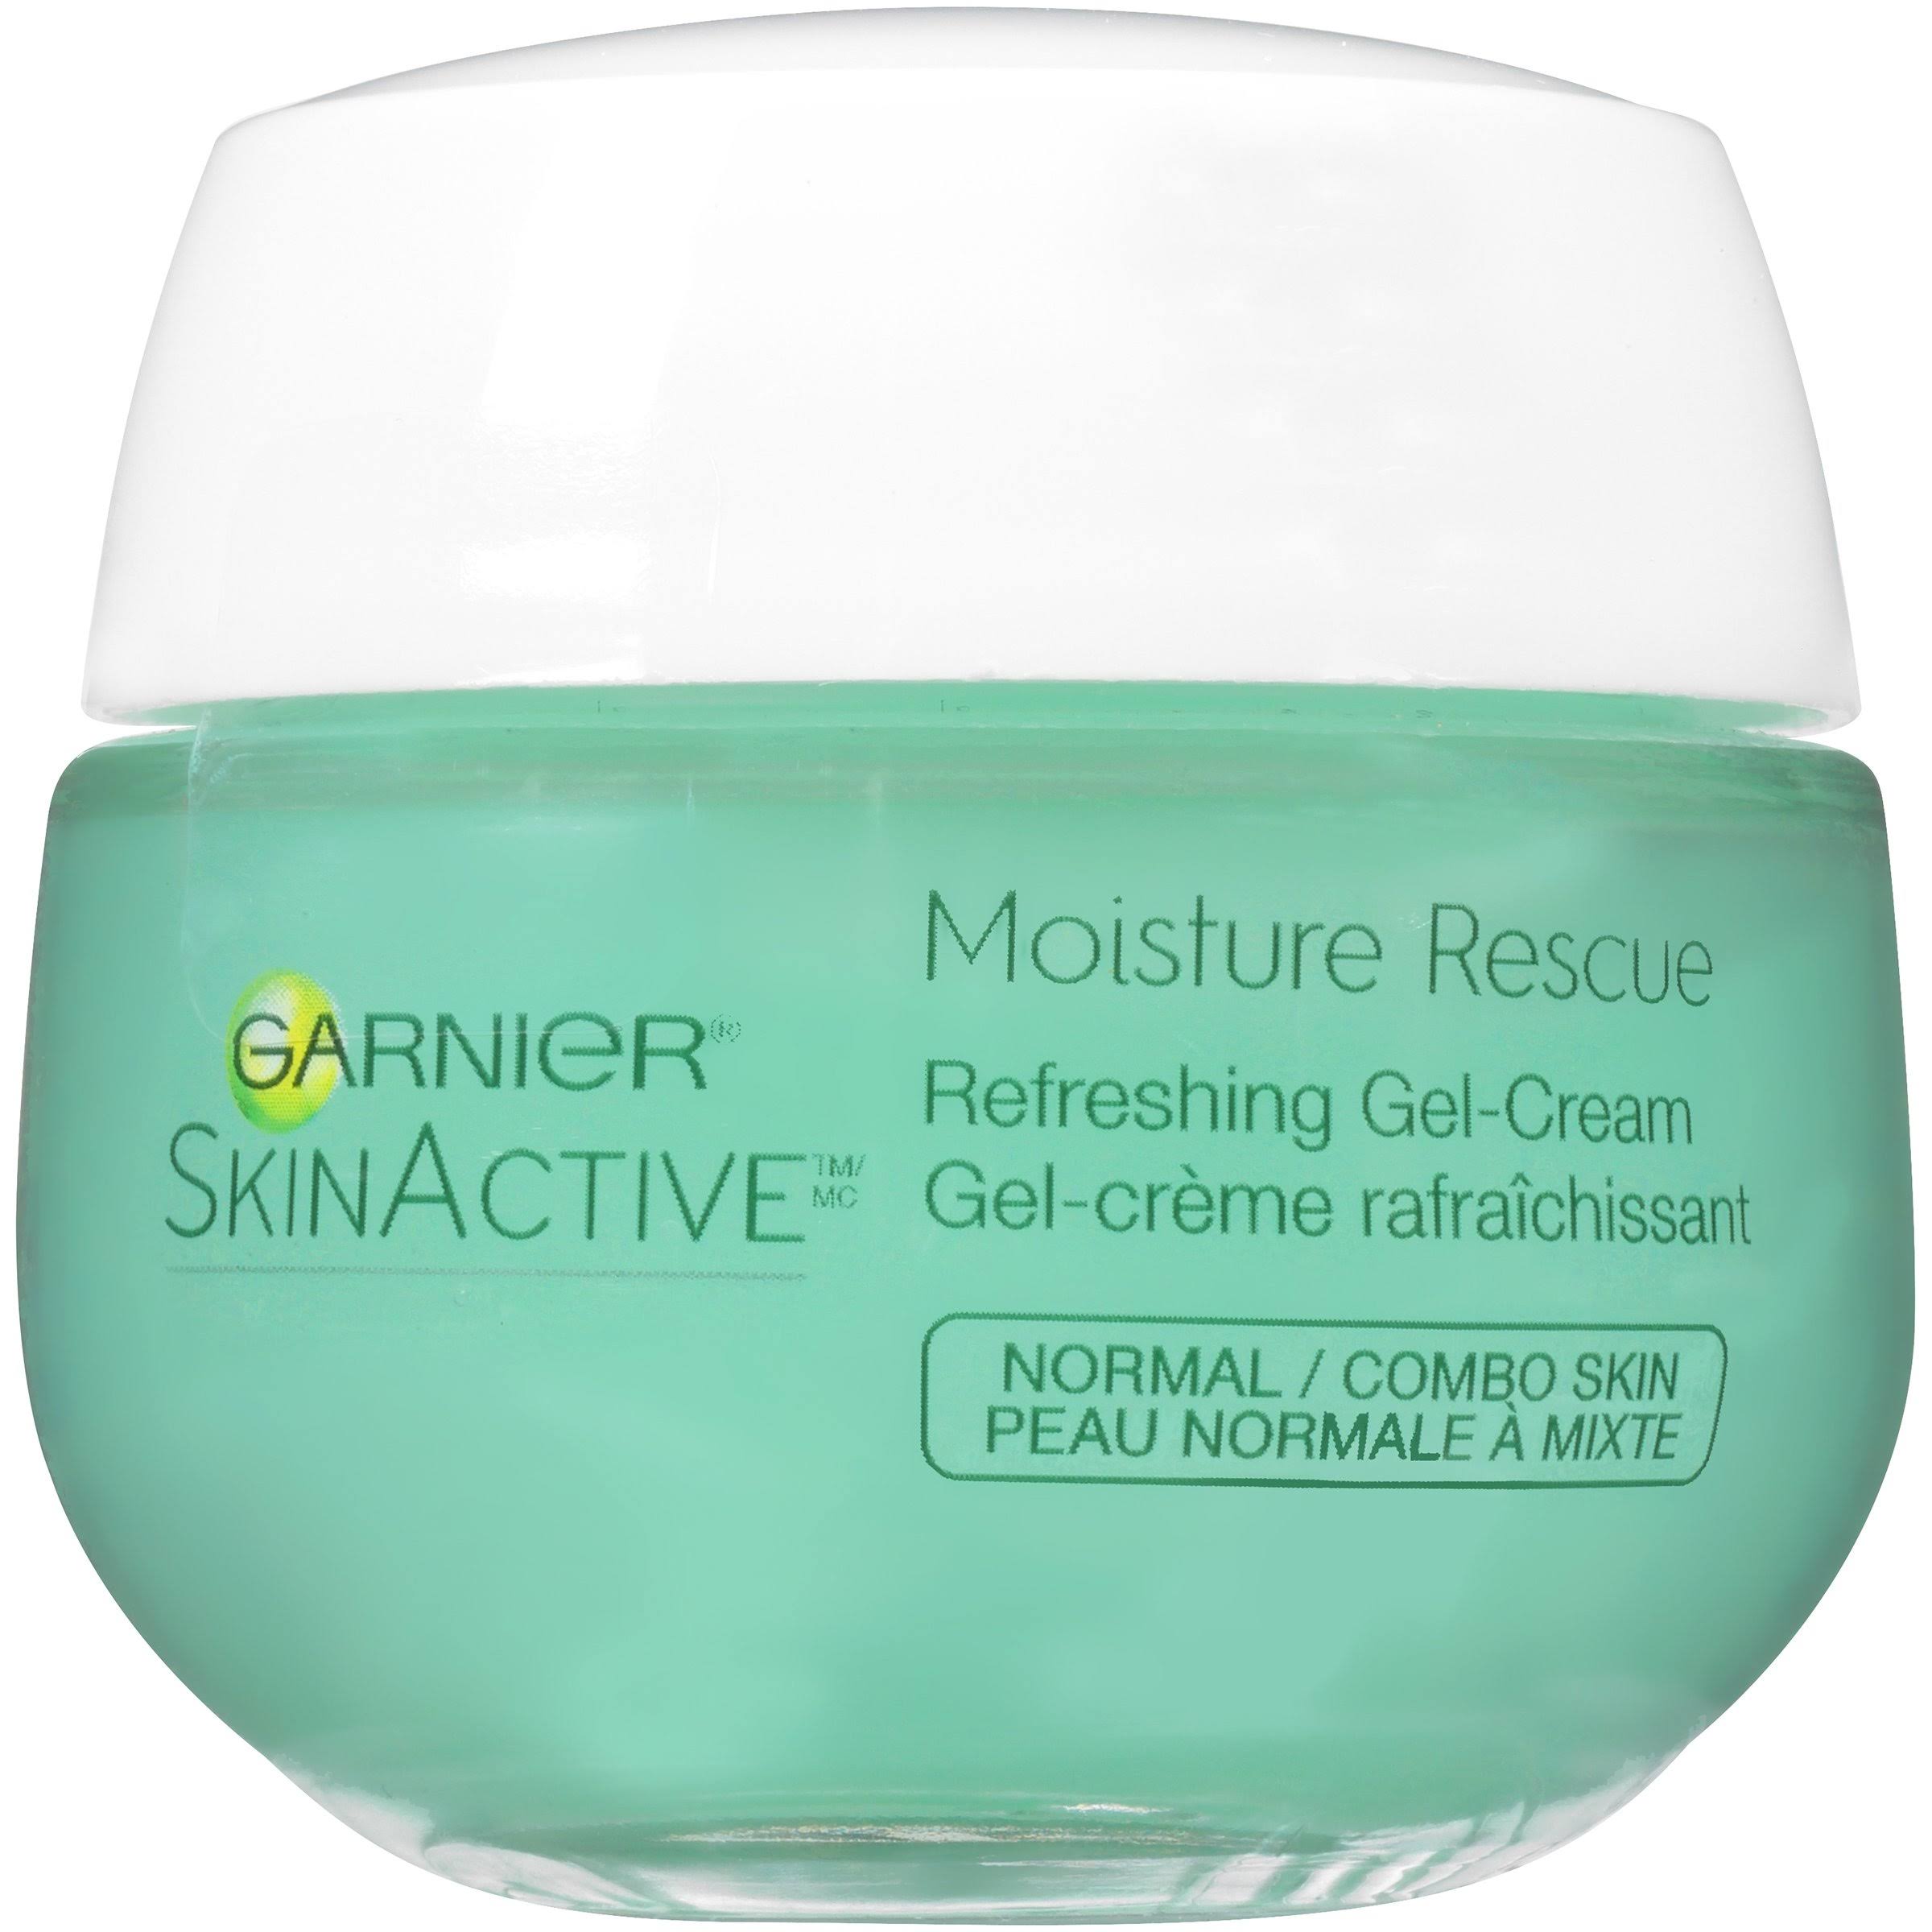 Garnier SkinActive Moisture Rescue Refreshing Gel Cream - 1.7oz